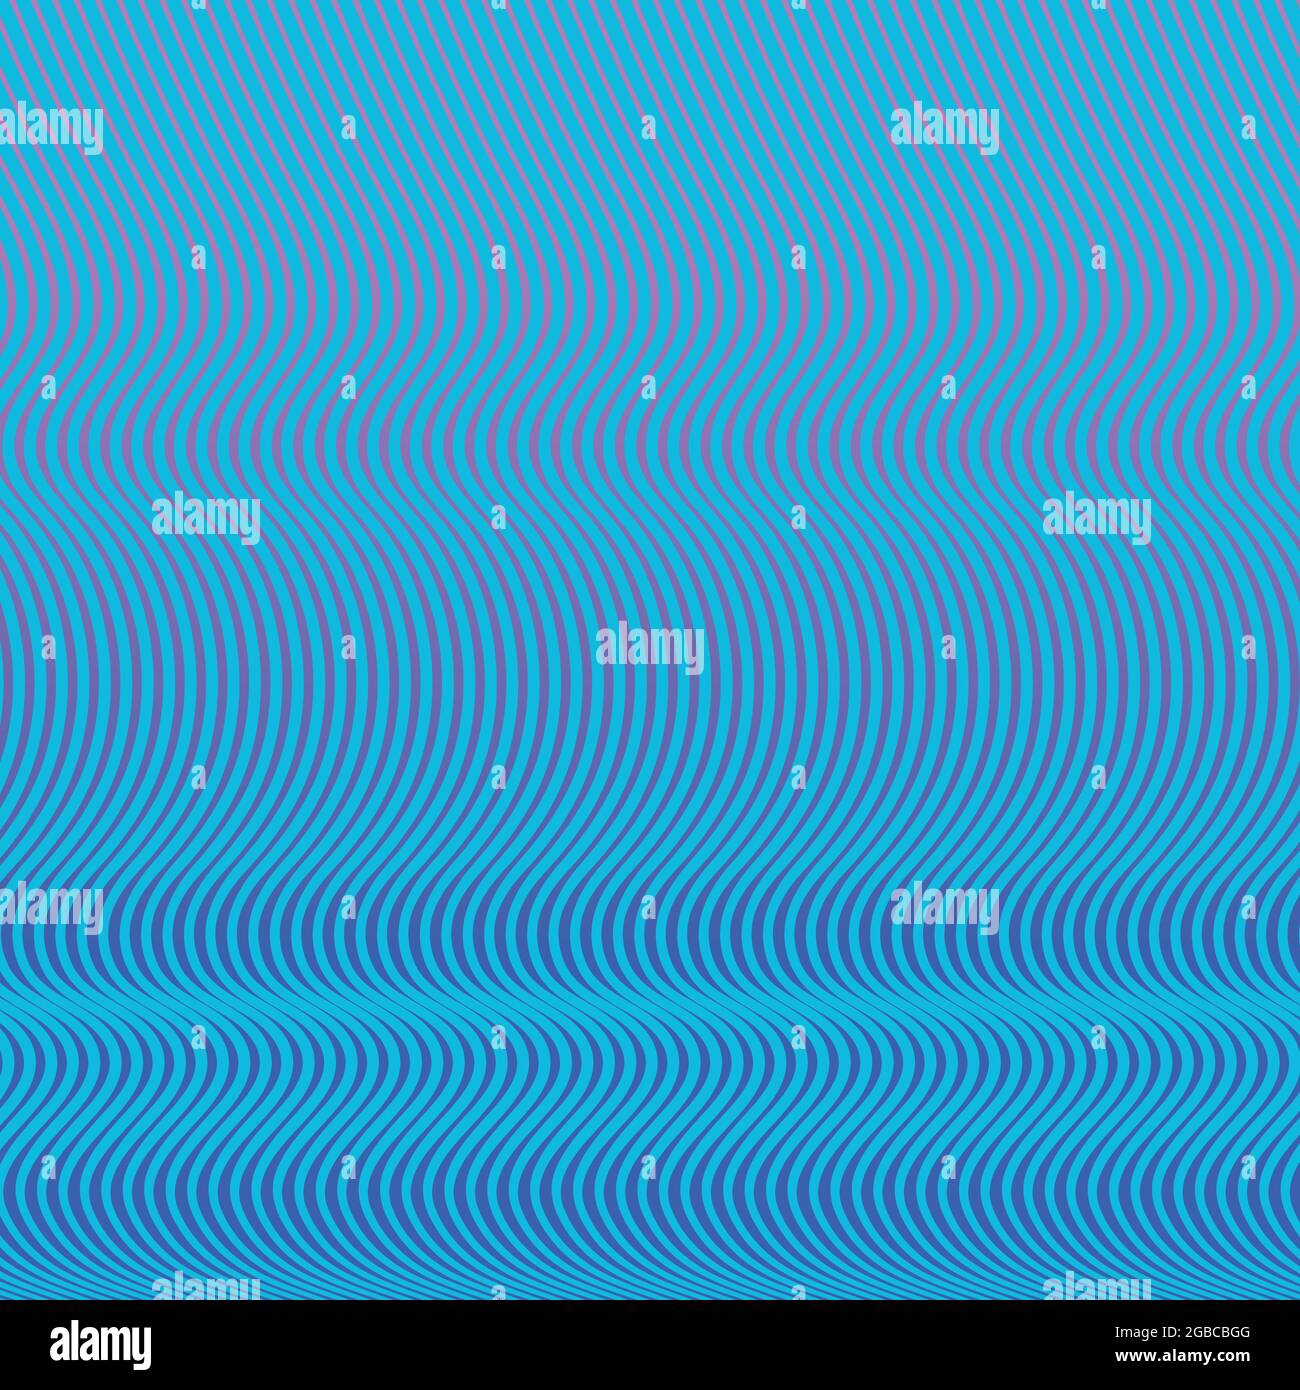 Un modello astratto con linee nelle onde. Le linee sono blu acqua e lo sfondo è un sfumatura viola blu chiaro. Illustrazione Vettoriale